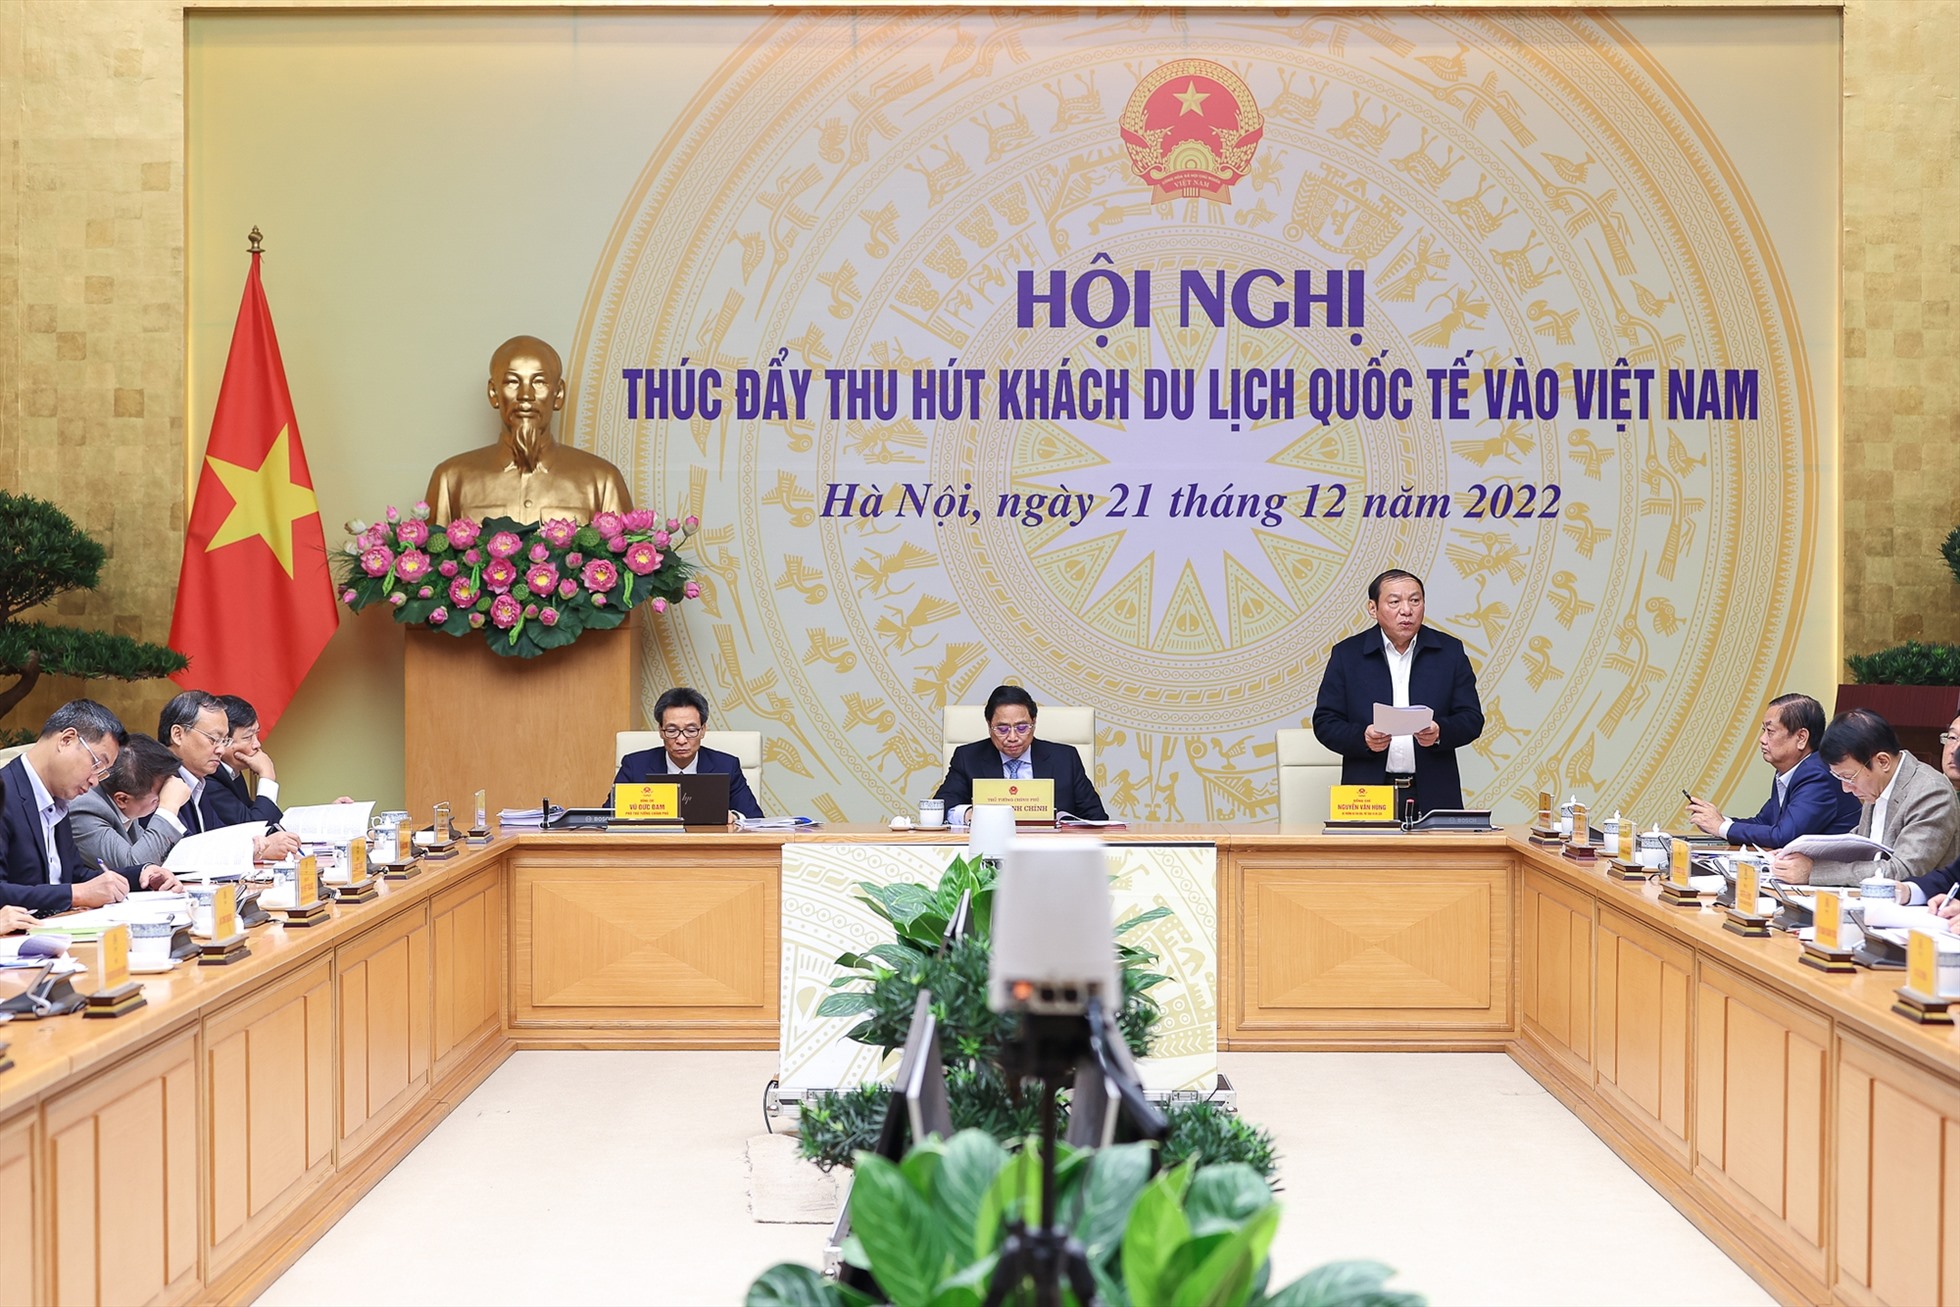 Hội nghị thúc đẩy thu hút khách du lịch quốc tế vào Việt Nam. Ảnh: Nhật Bắc